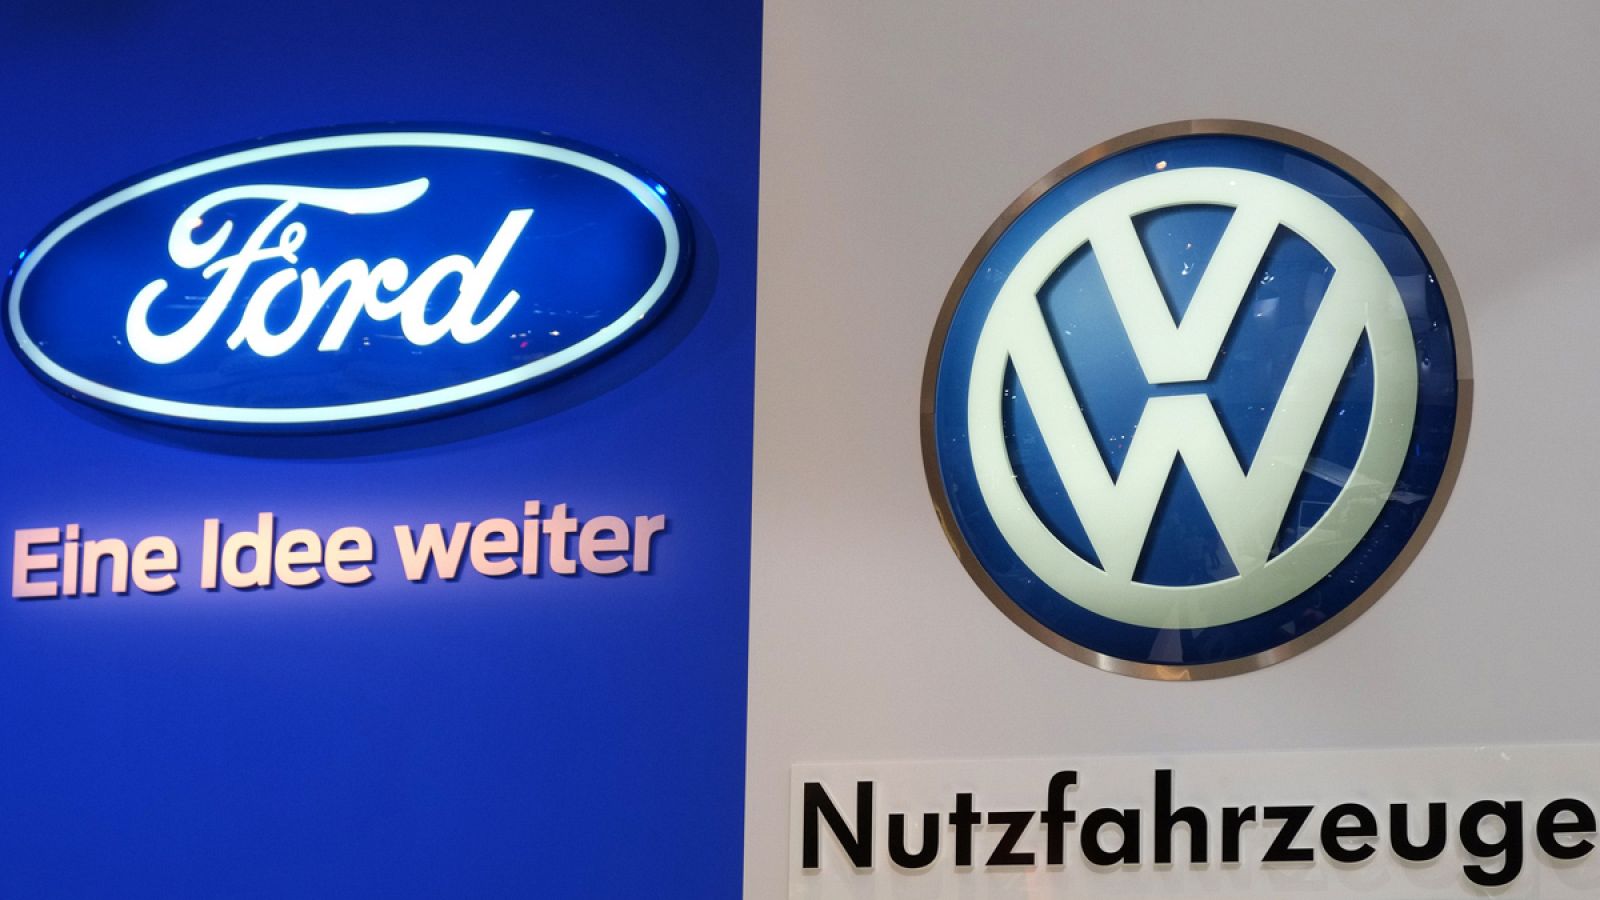 Logos de Ford y Volkswagen